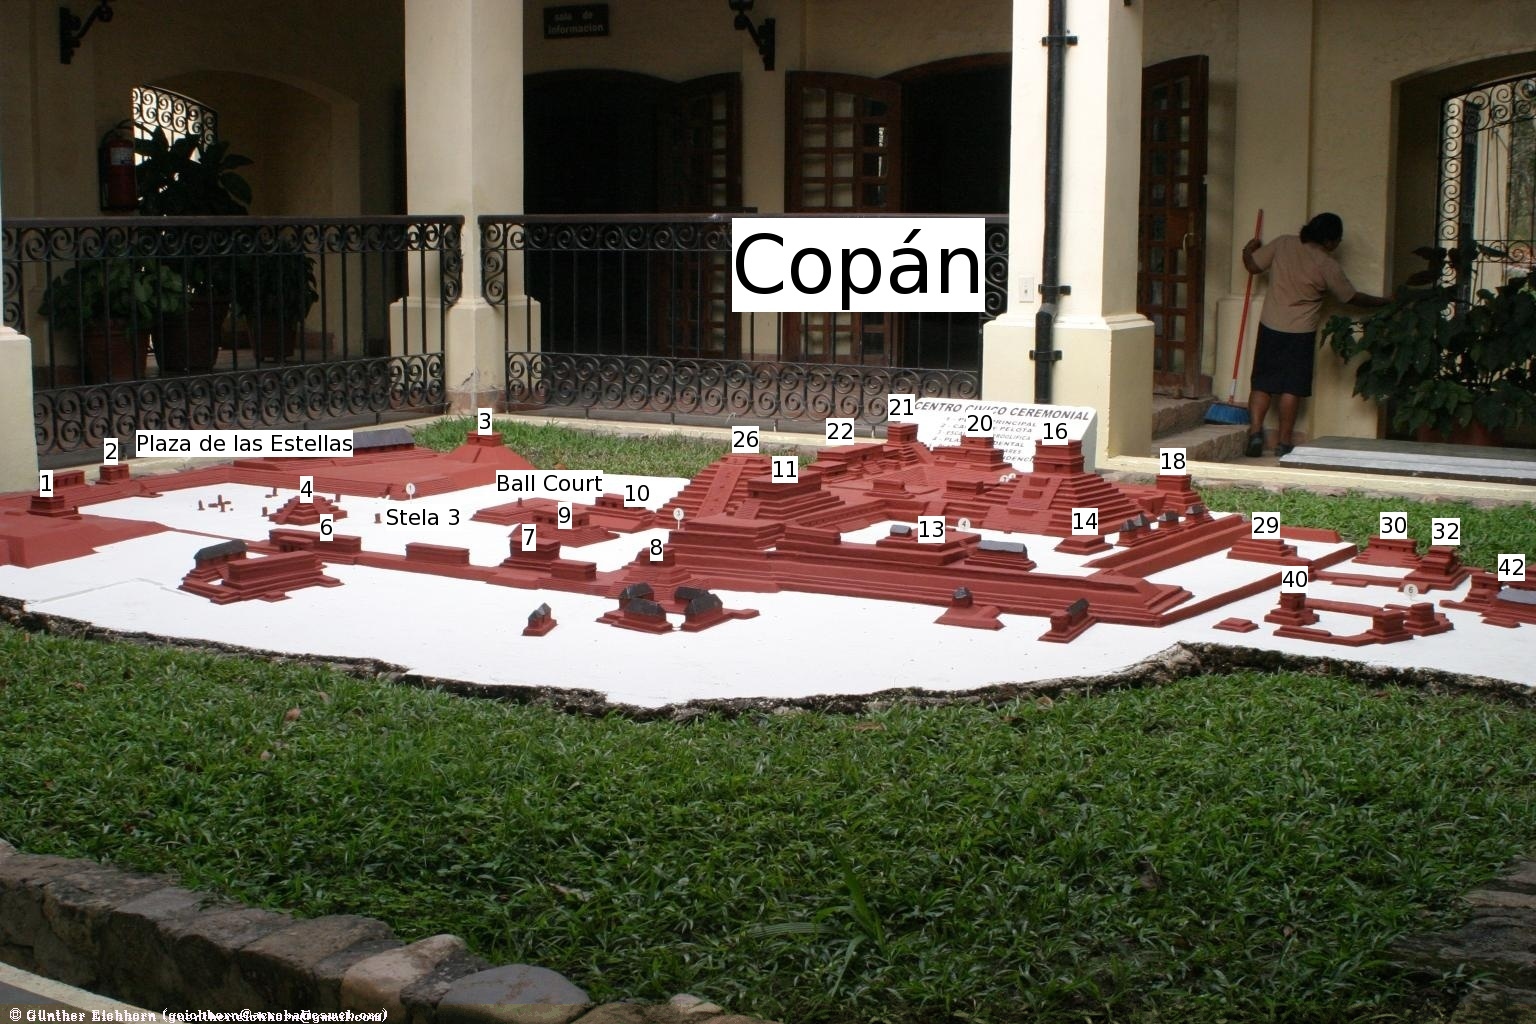 Copan Map